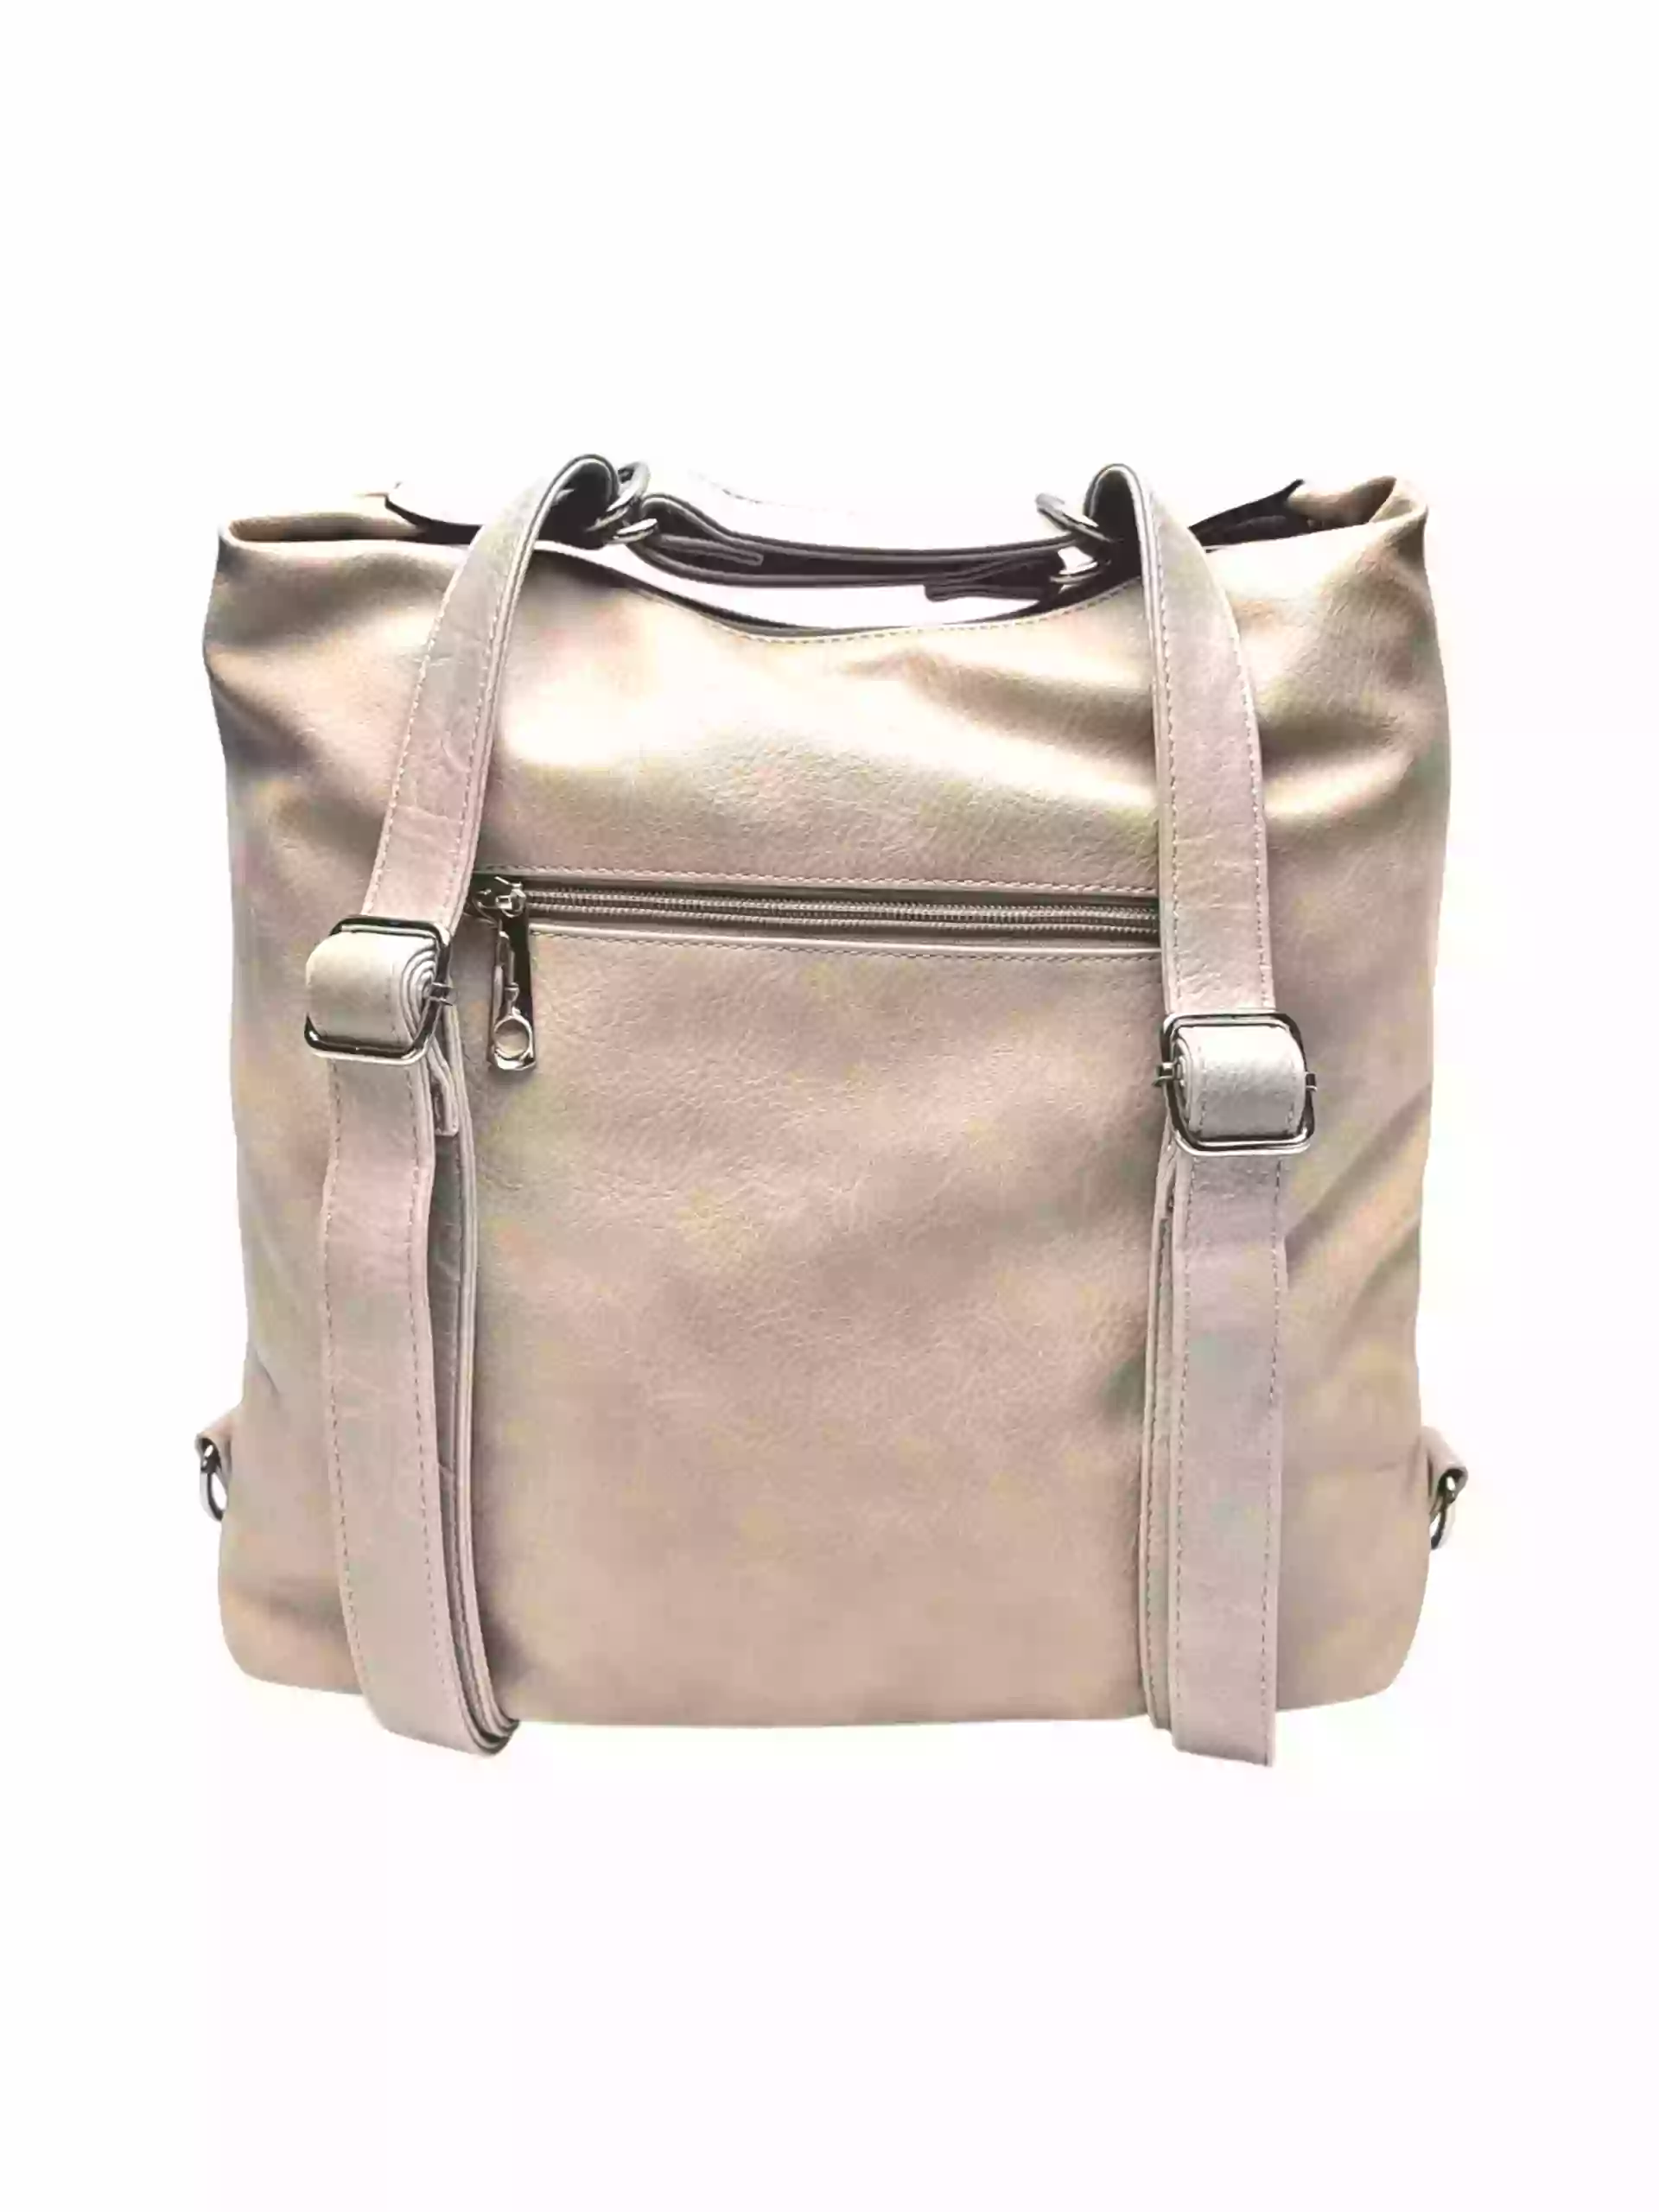 Velký světle hnědý kabelko-batoh s šikmou kapsou, Tapple, H18077N+, zadní strana kabelko-batohu 2v1 s popruhy